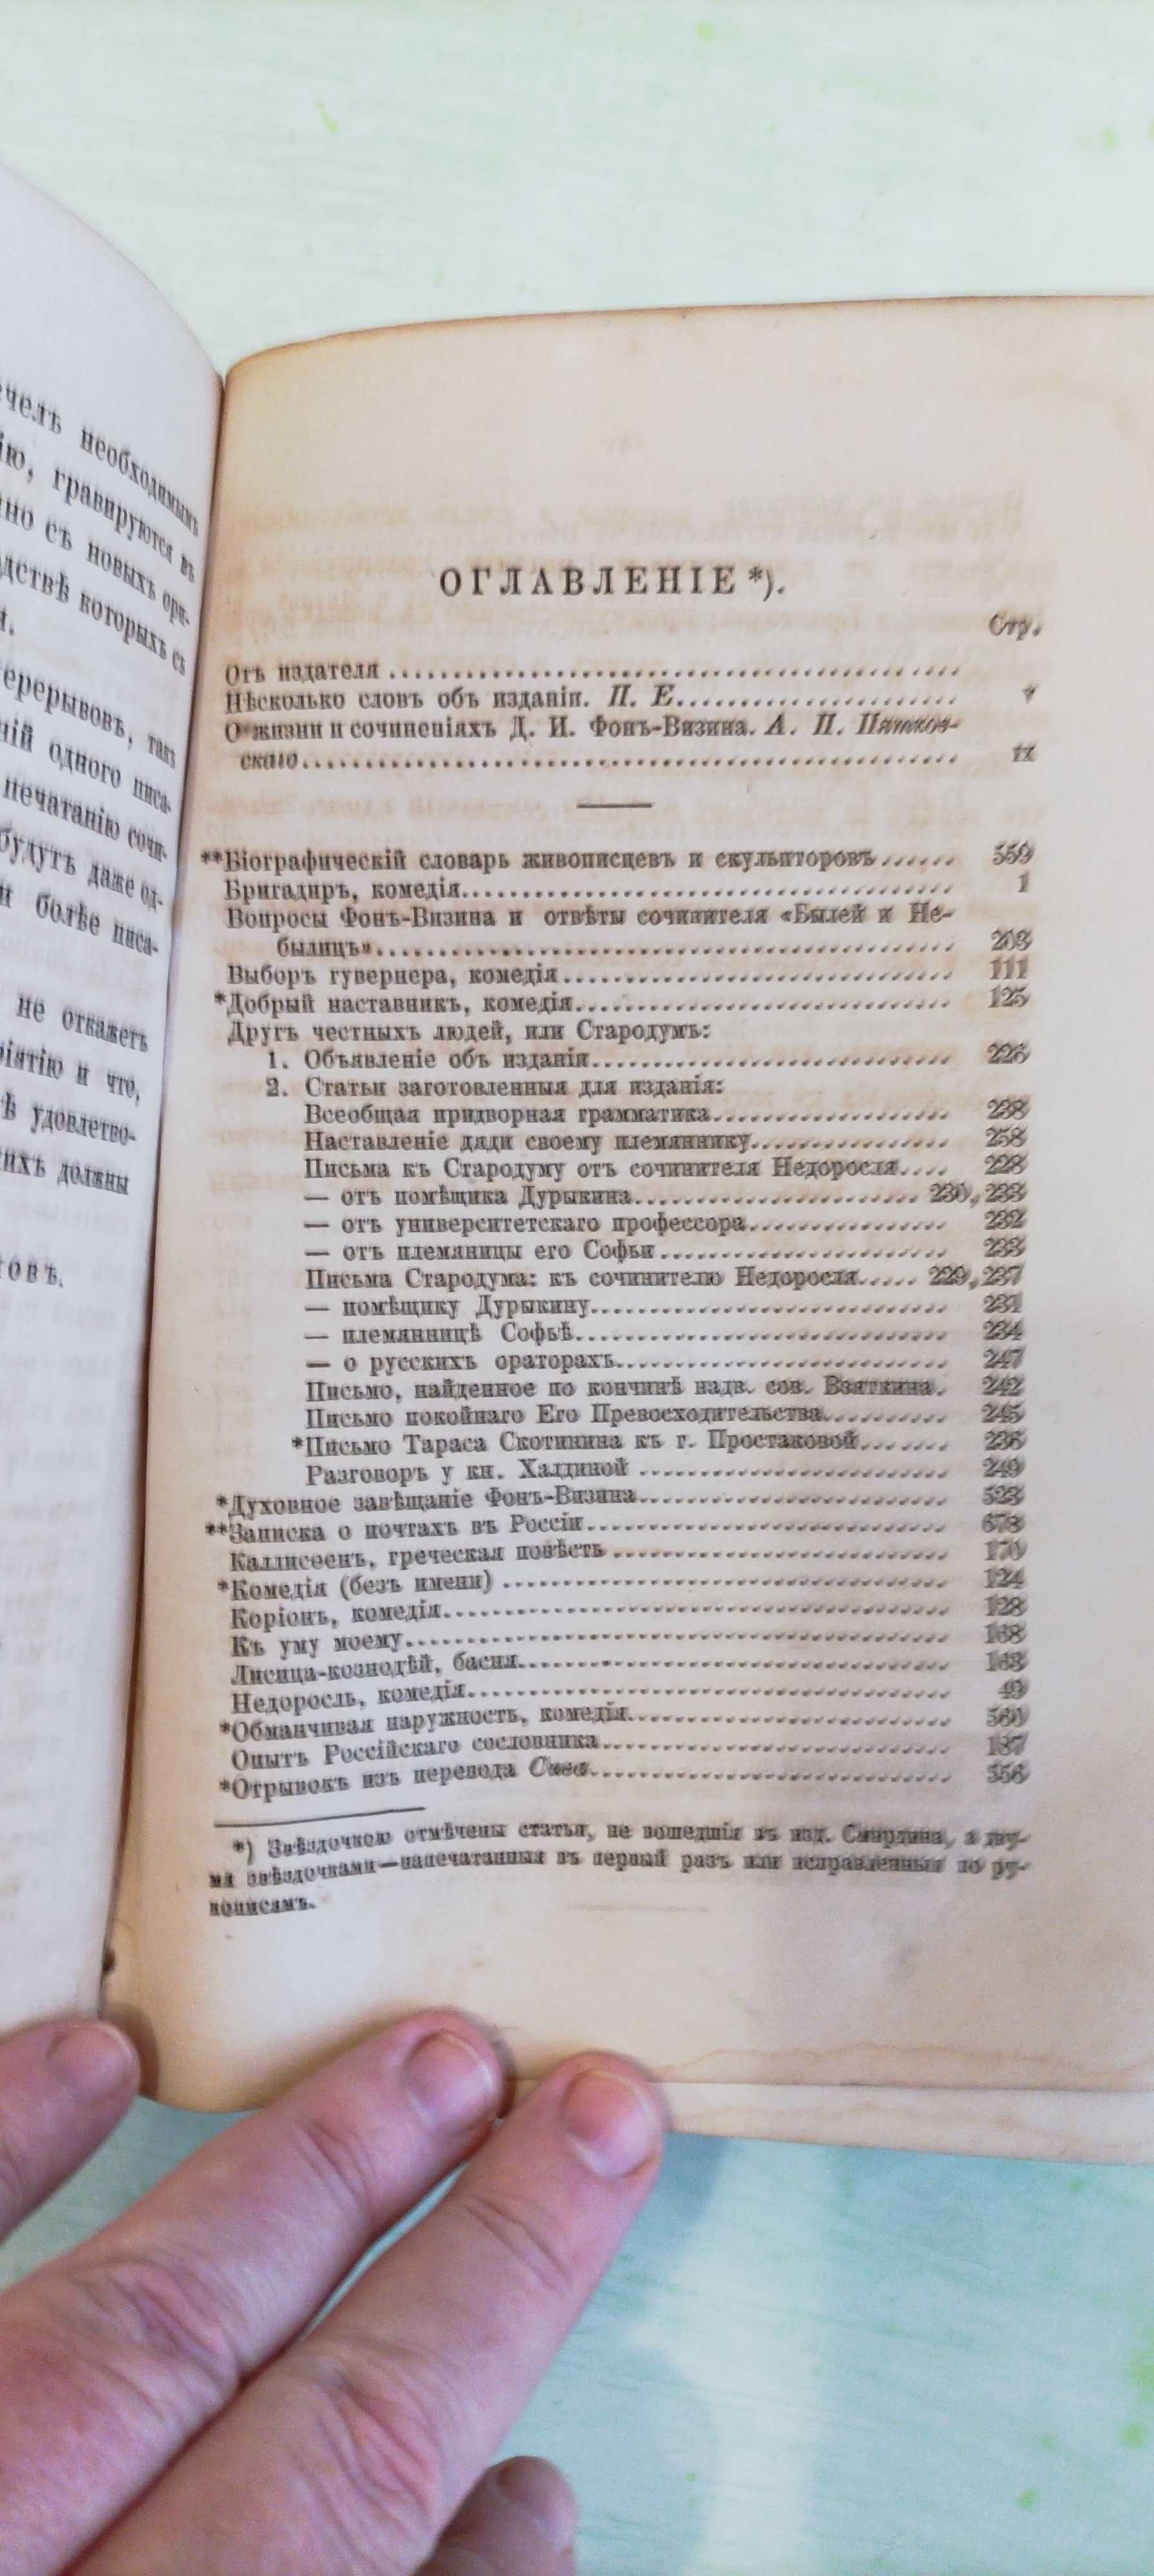 Д.И. Фонвизин. Сочинения. 1866 год